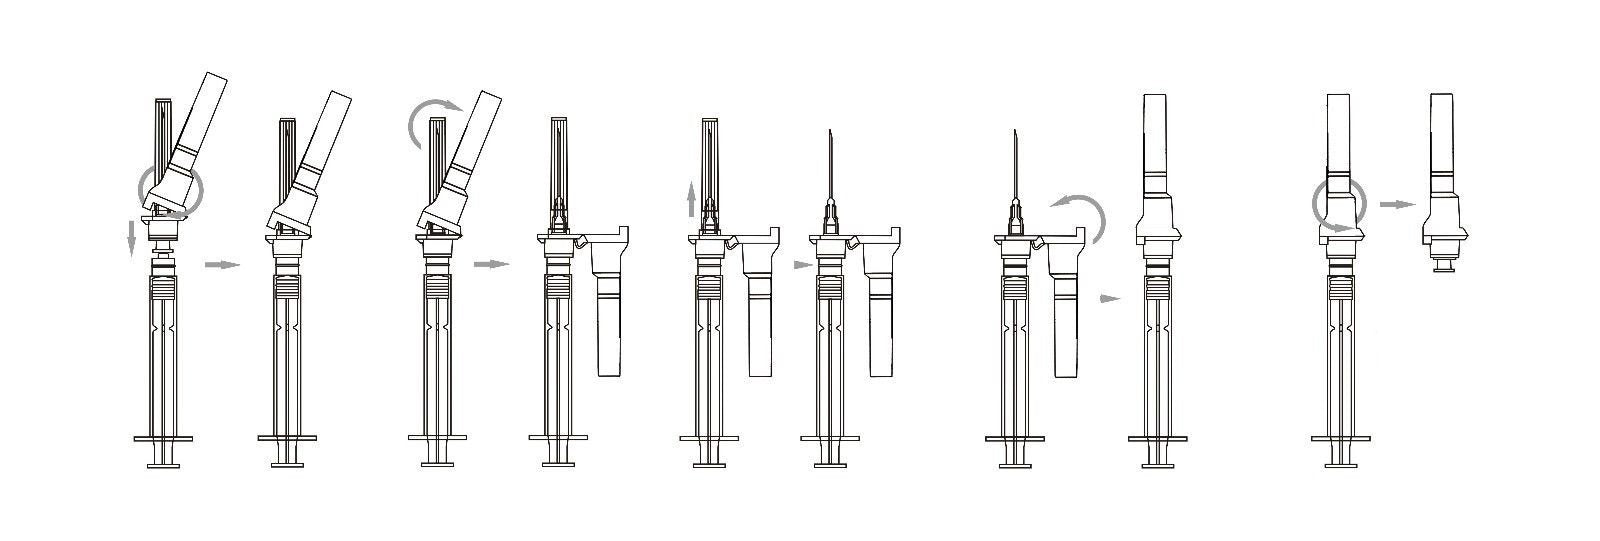 how to use syringe & needle safely